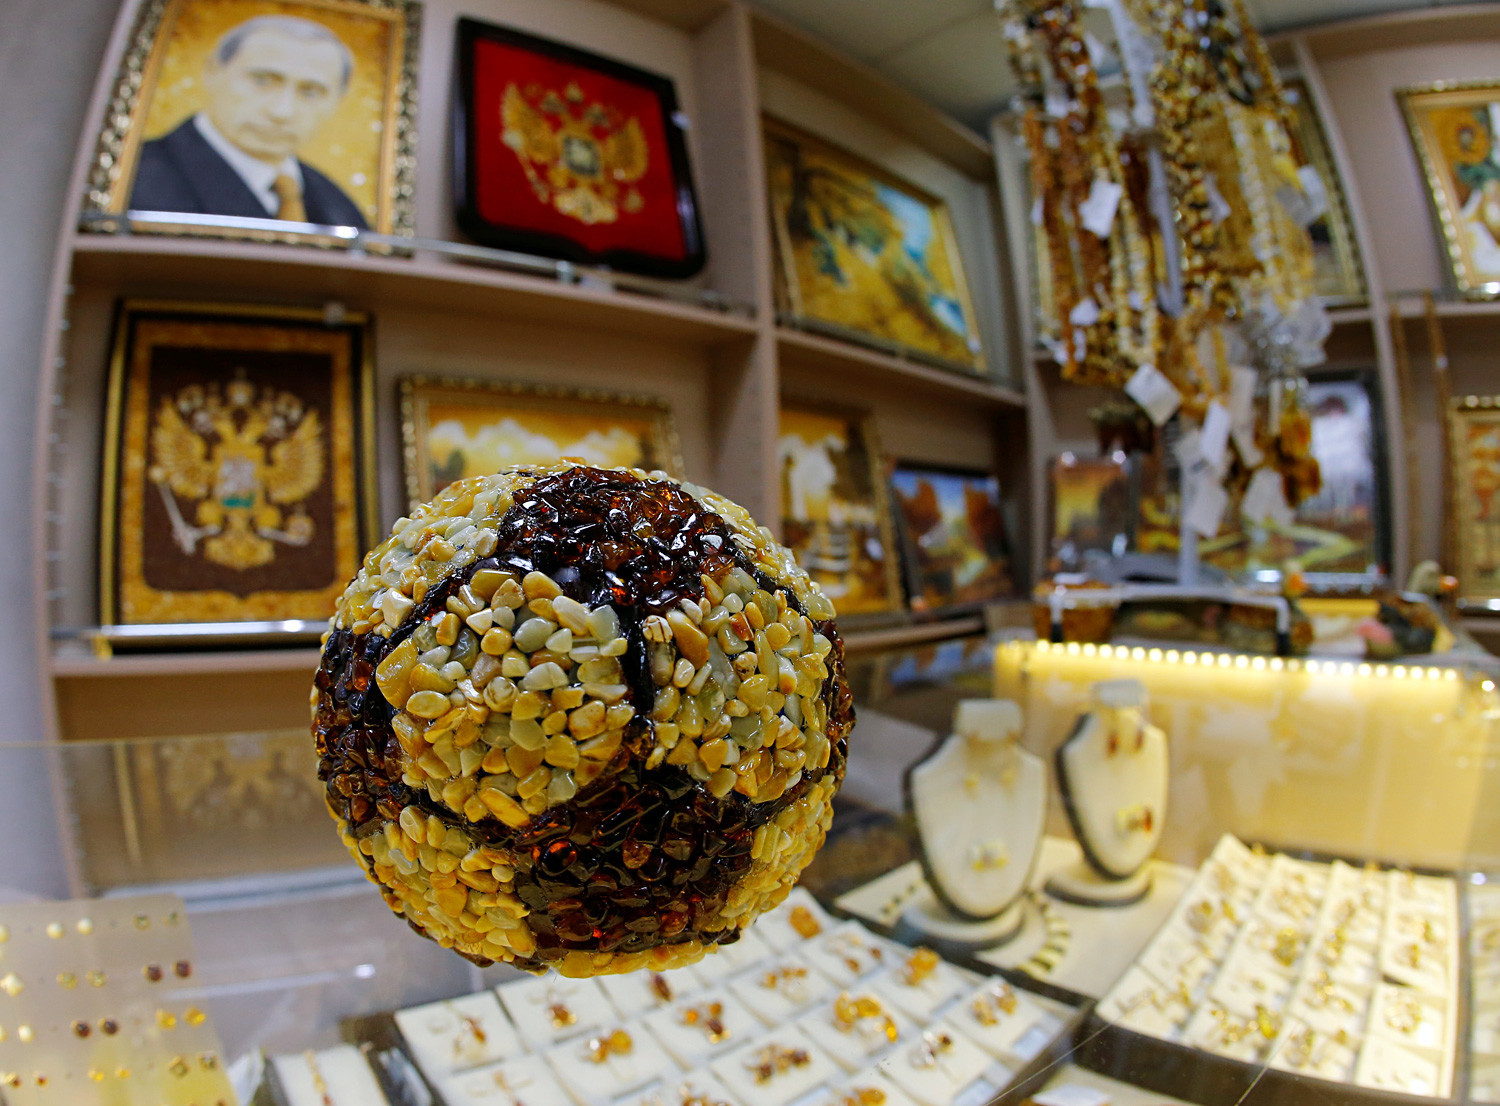 Un ballon de football (oui, il y a un portrait de Vladimir Poutine sur le mur, également fait avec de l'ambre).